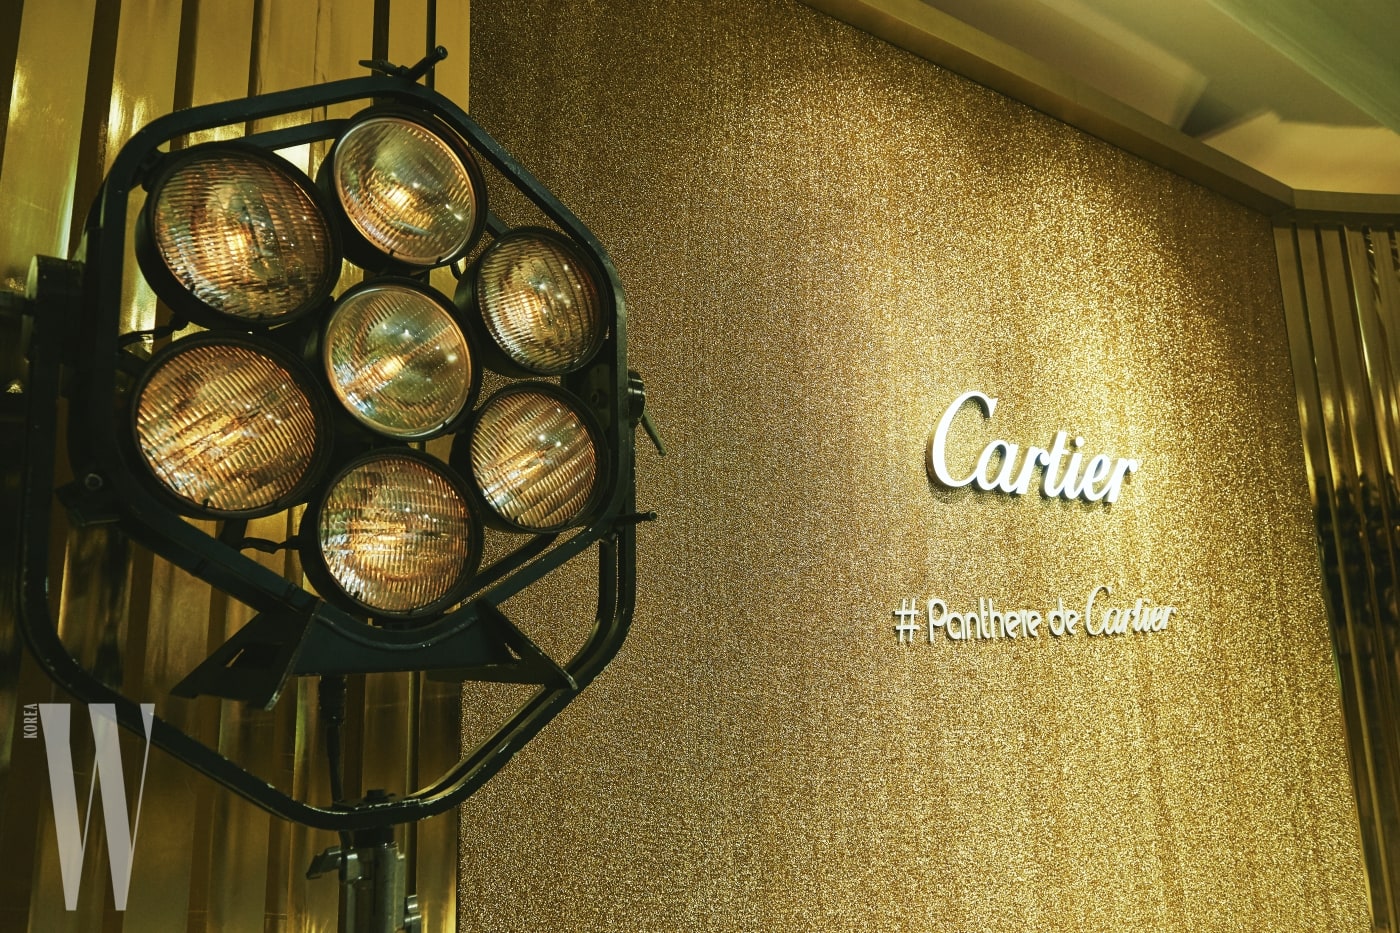 황금빛으로 글램하게 물든 파티 현장. #Panthere de Cartier라고 적힌 해시태그 문구가 눈길을 끈다.